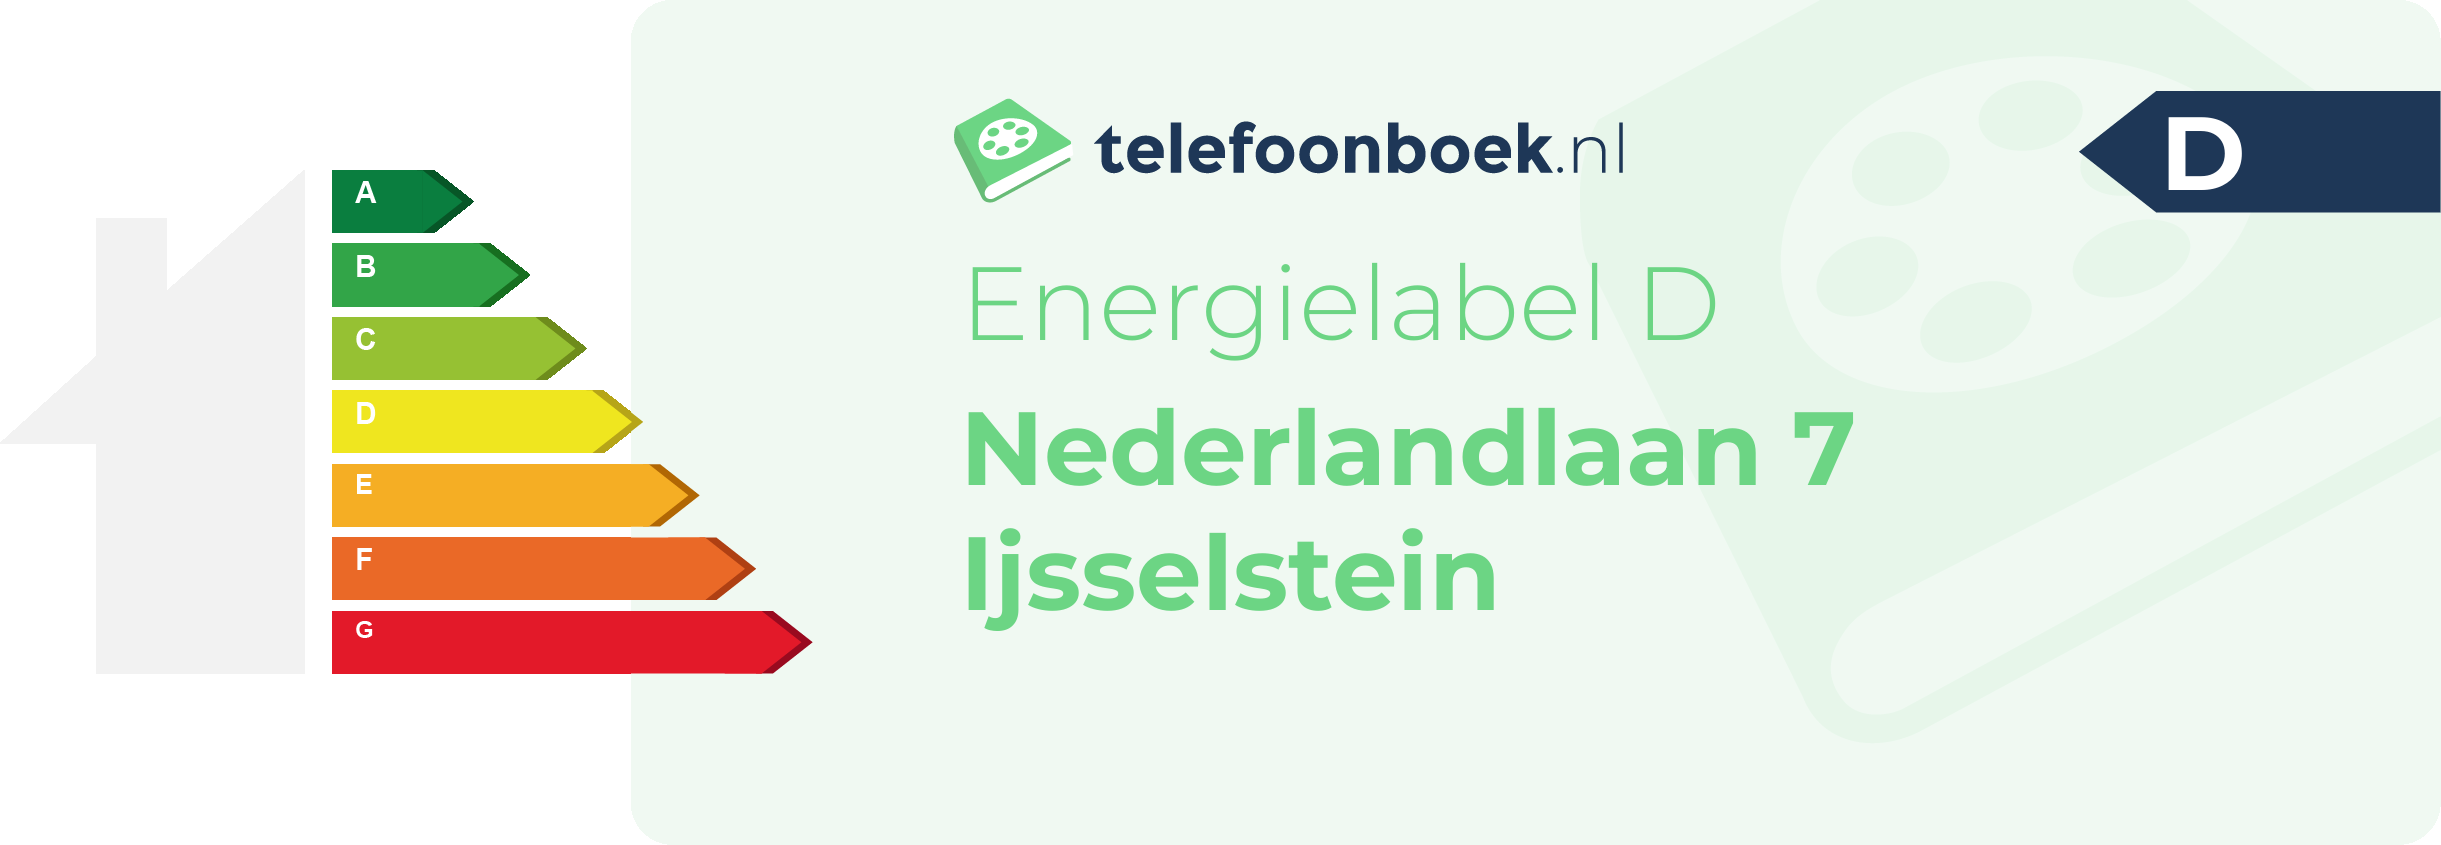 Energielabel Nederlandlaan 7 Ijsselstein